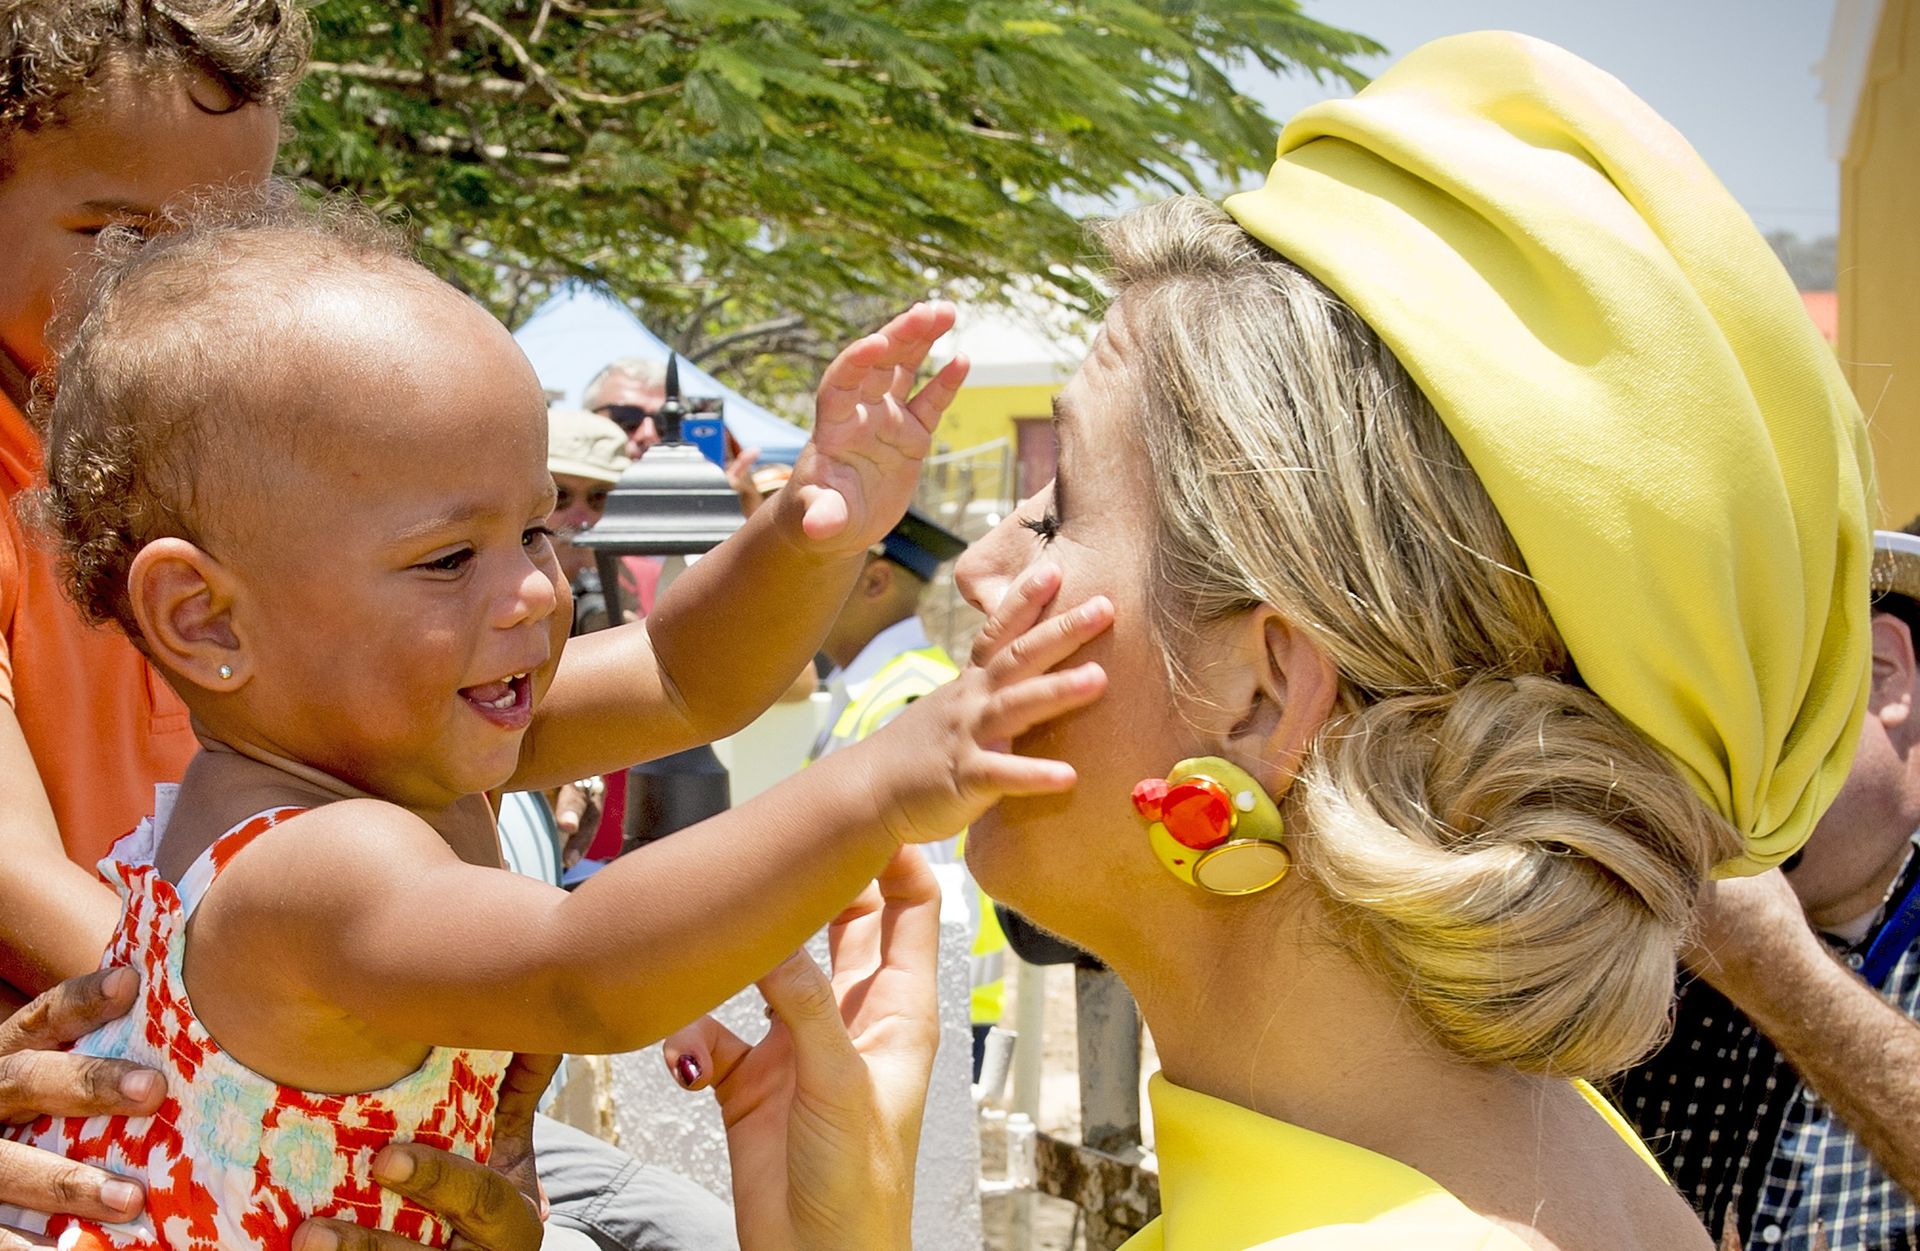 2015 - Koningin Máxima wordt begroet en geknuffeld door een baby tijdens haar bezoek aan Bonaire.